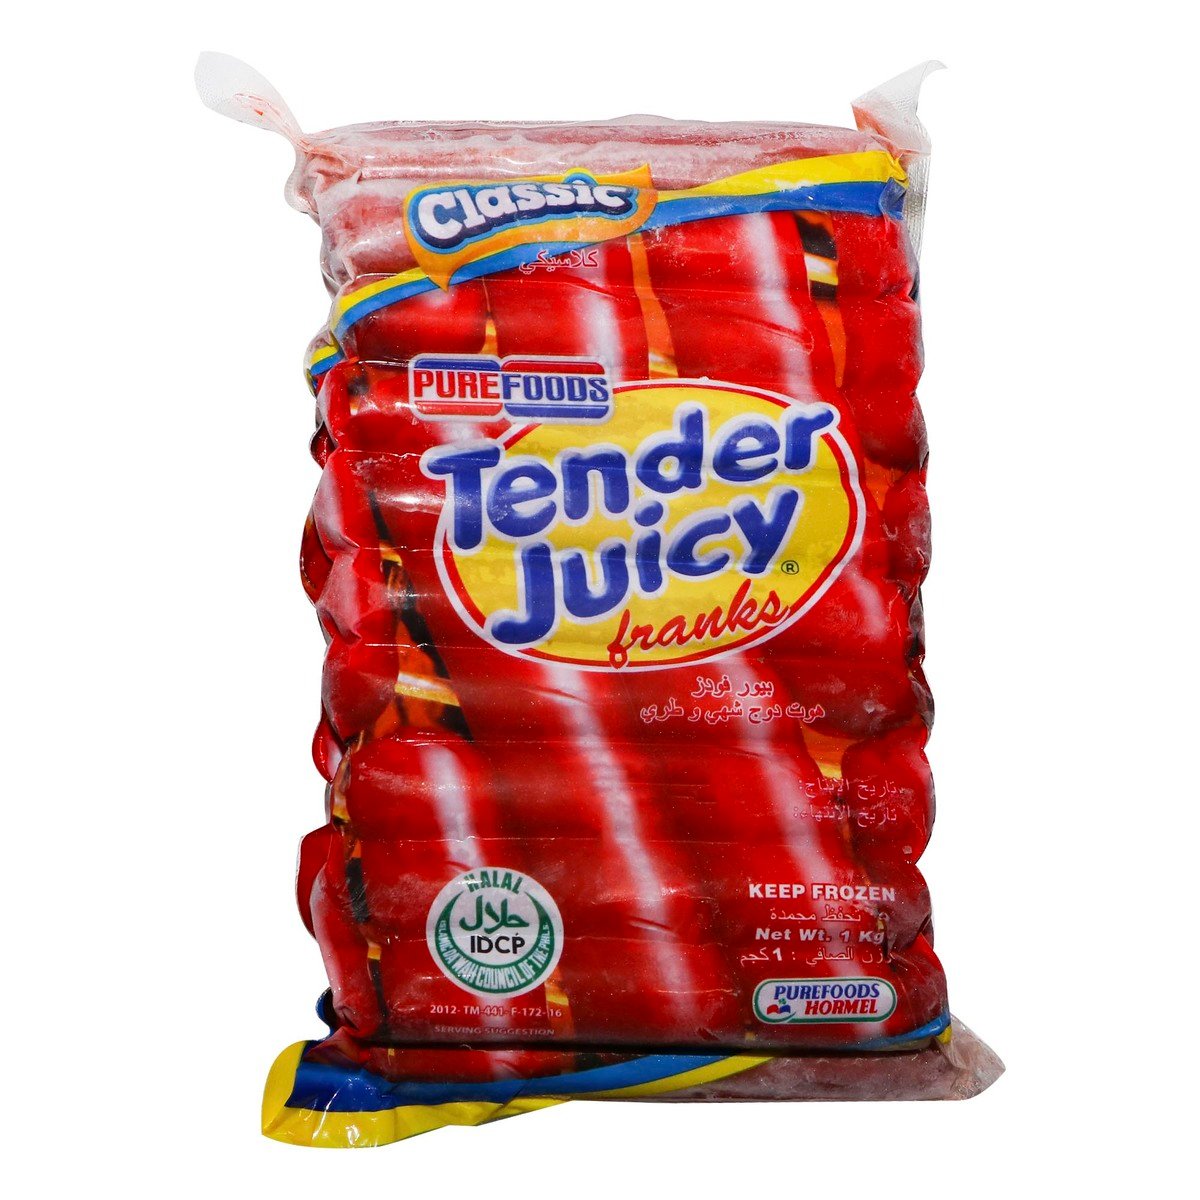 Pure Foods Classic Tender Juicy Franks 1 kg